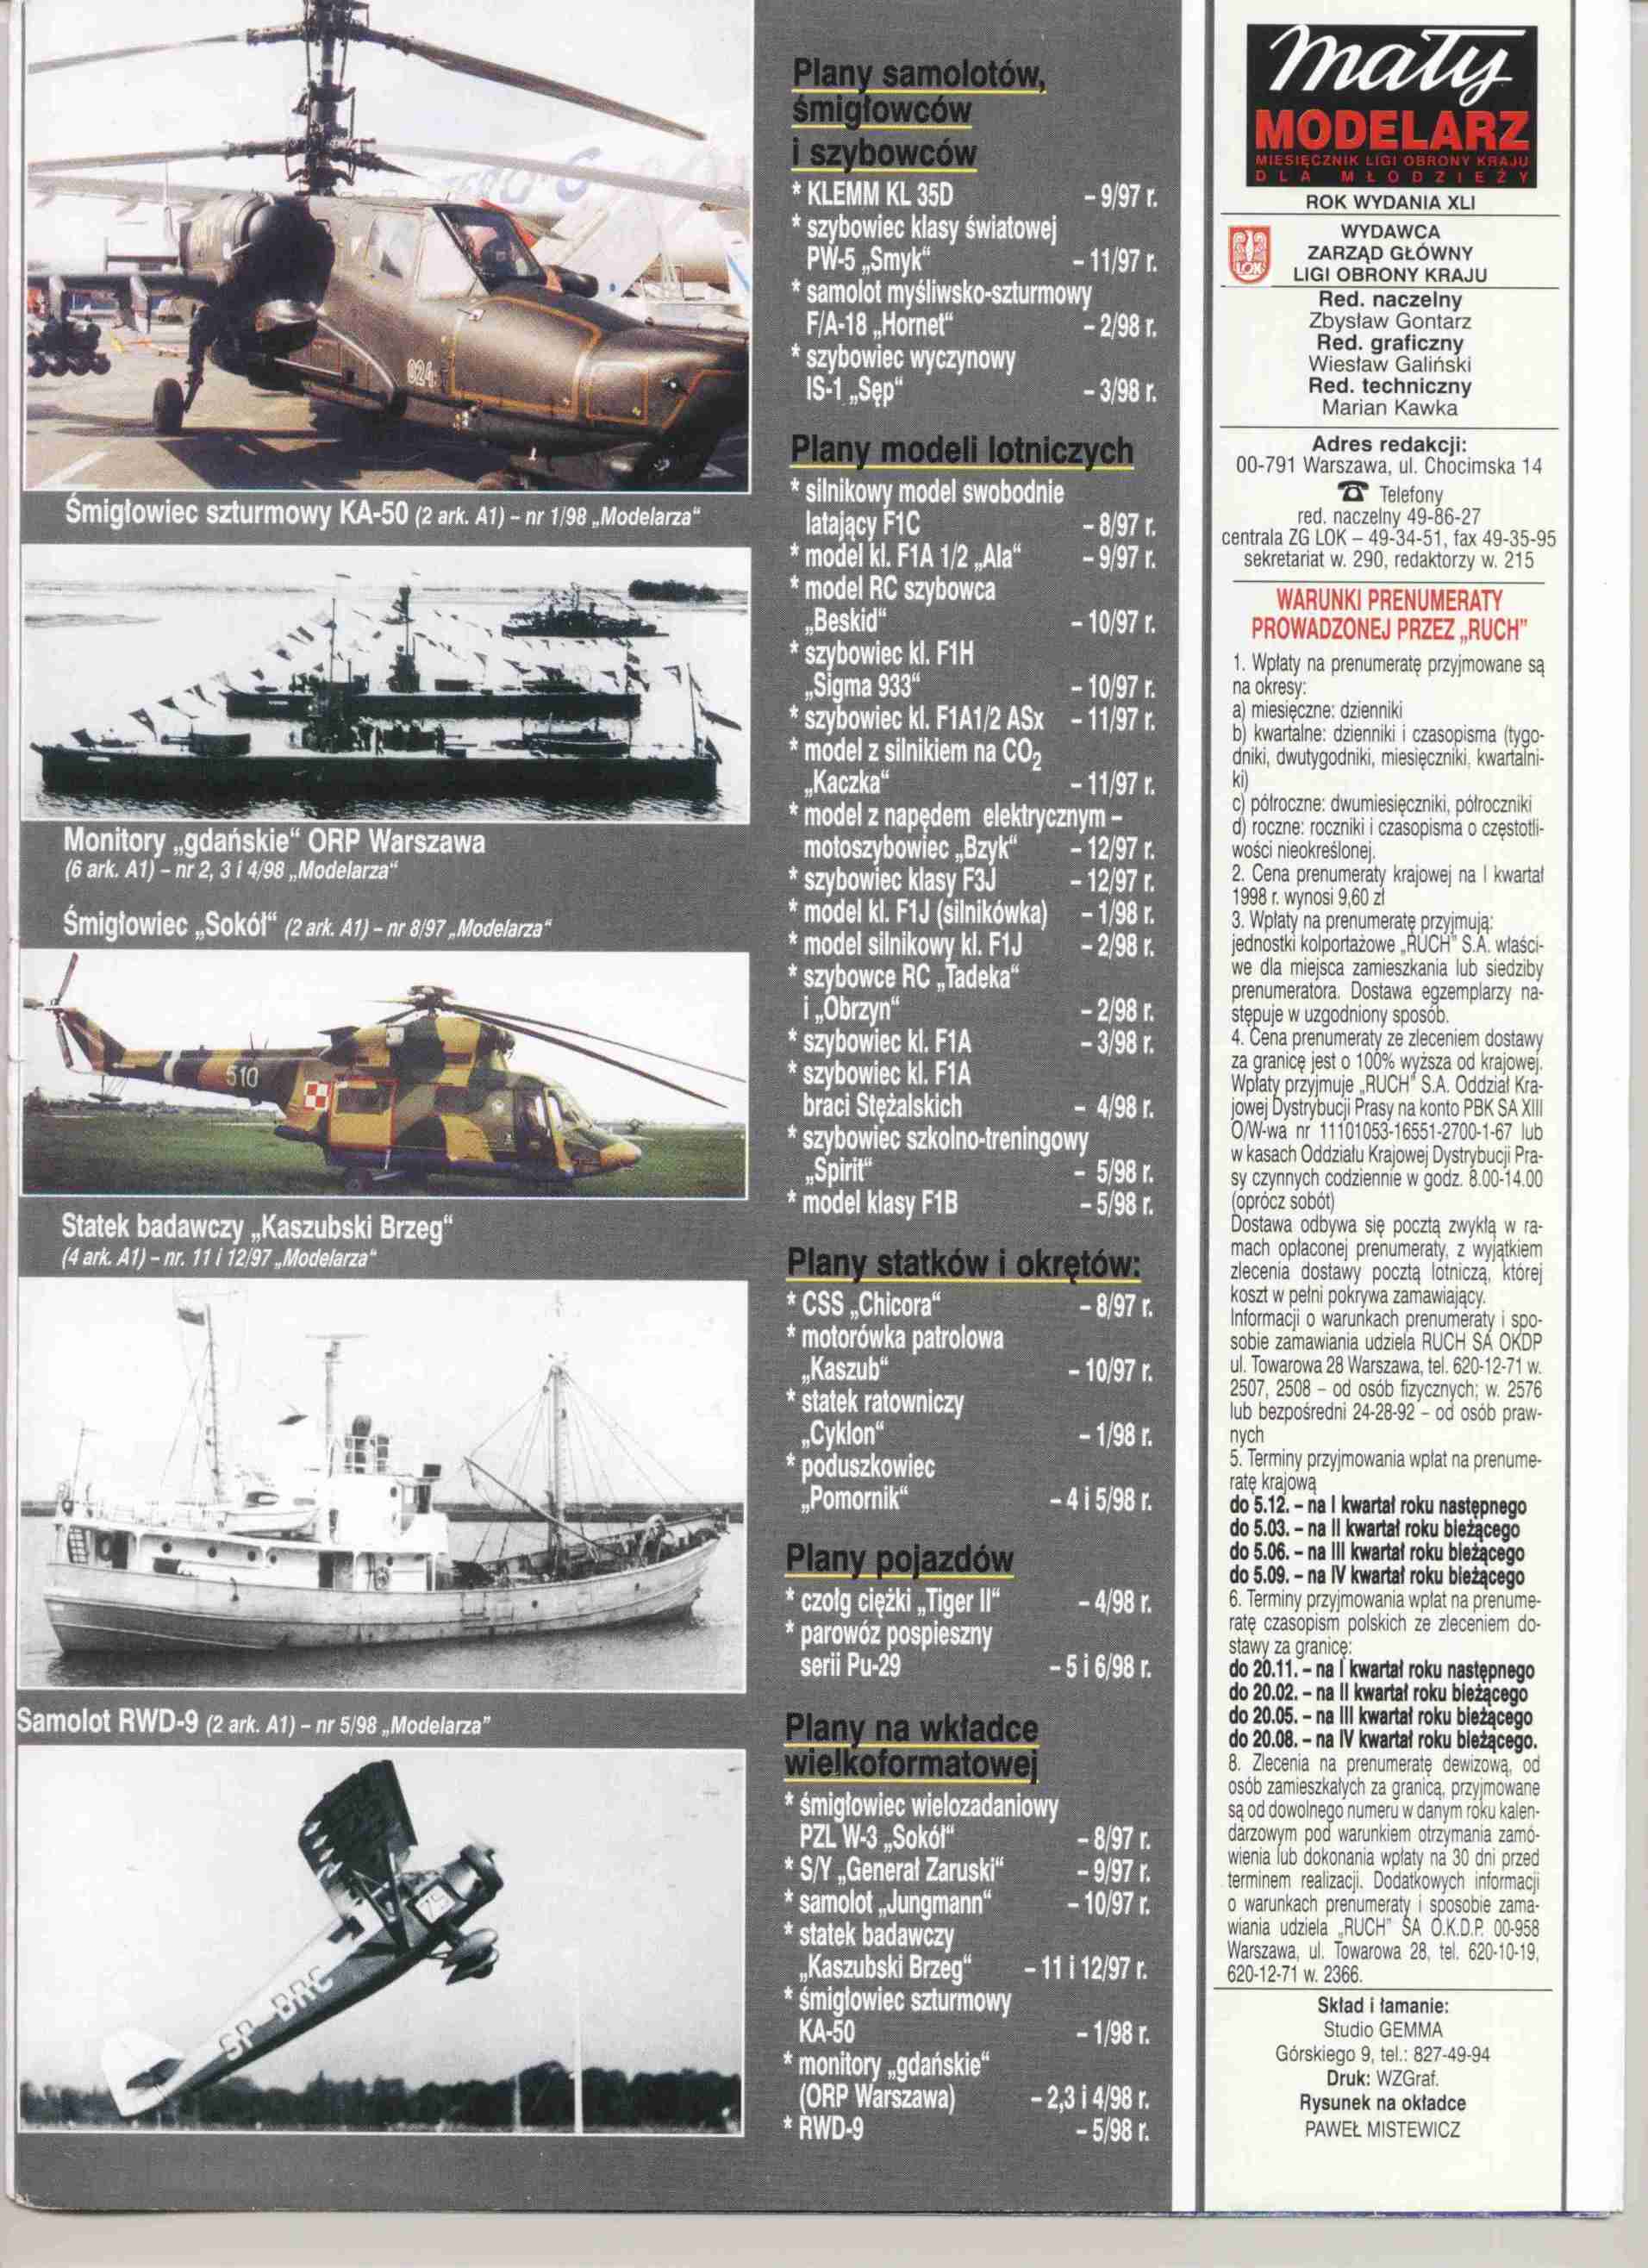 Mały Modelarz 1998.10-11 - Statek Żeglugi Przybrzeżnej Emilia - G.jpg